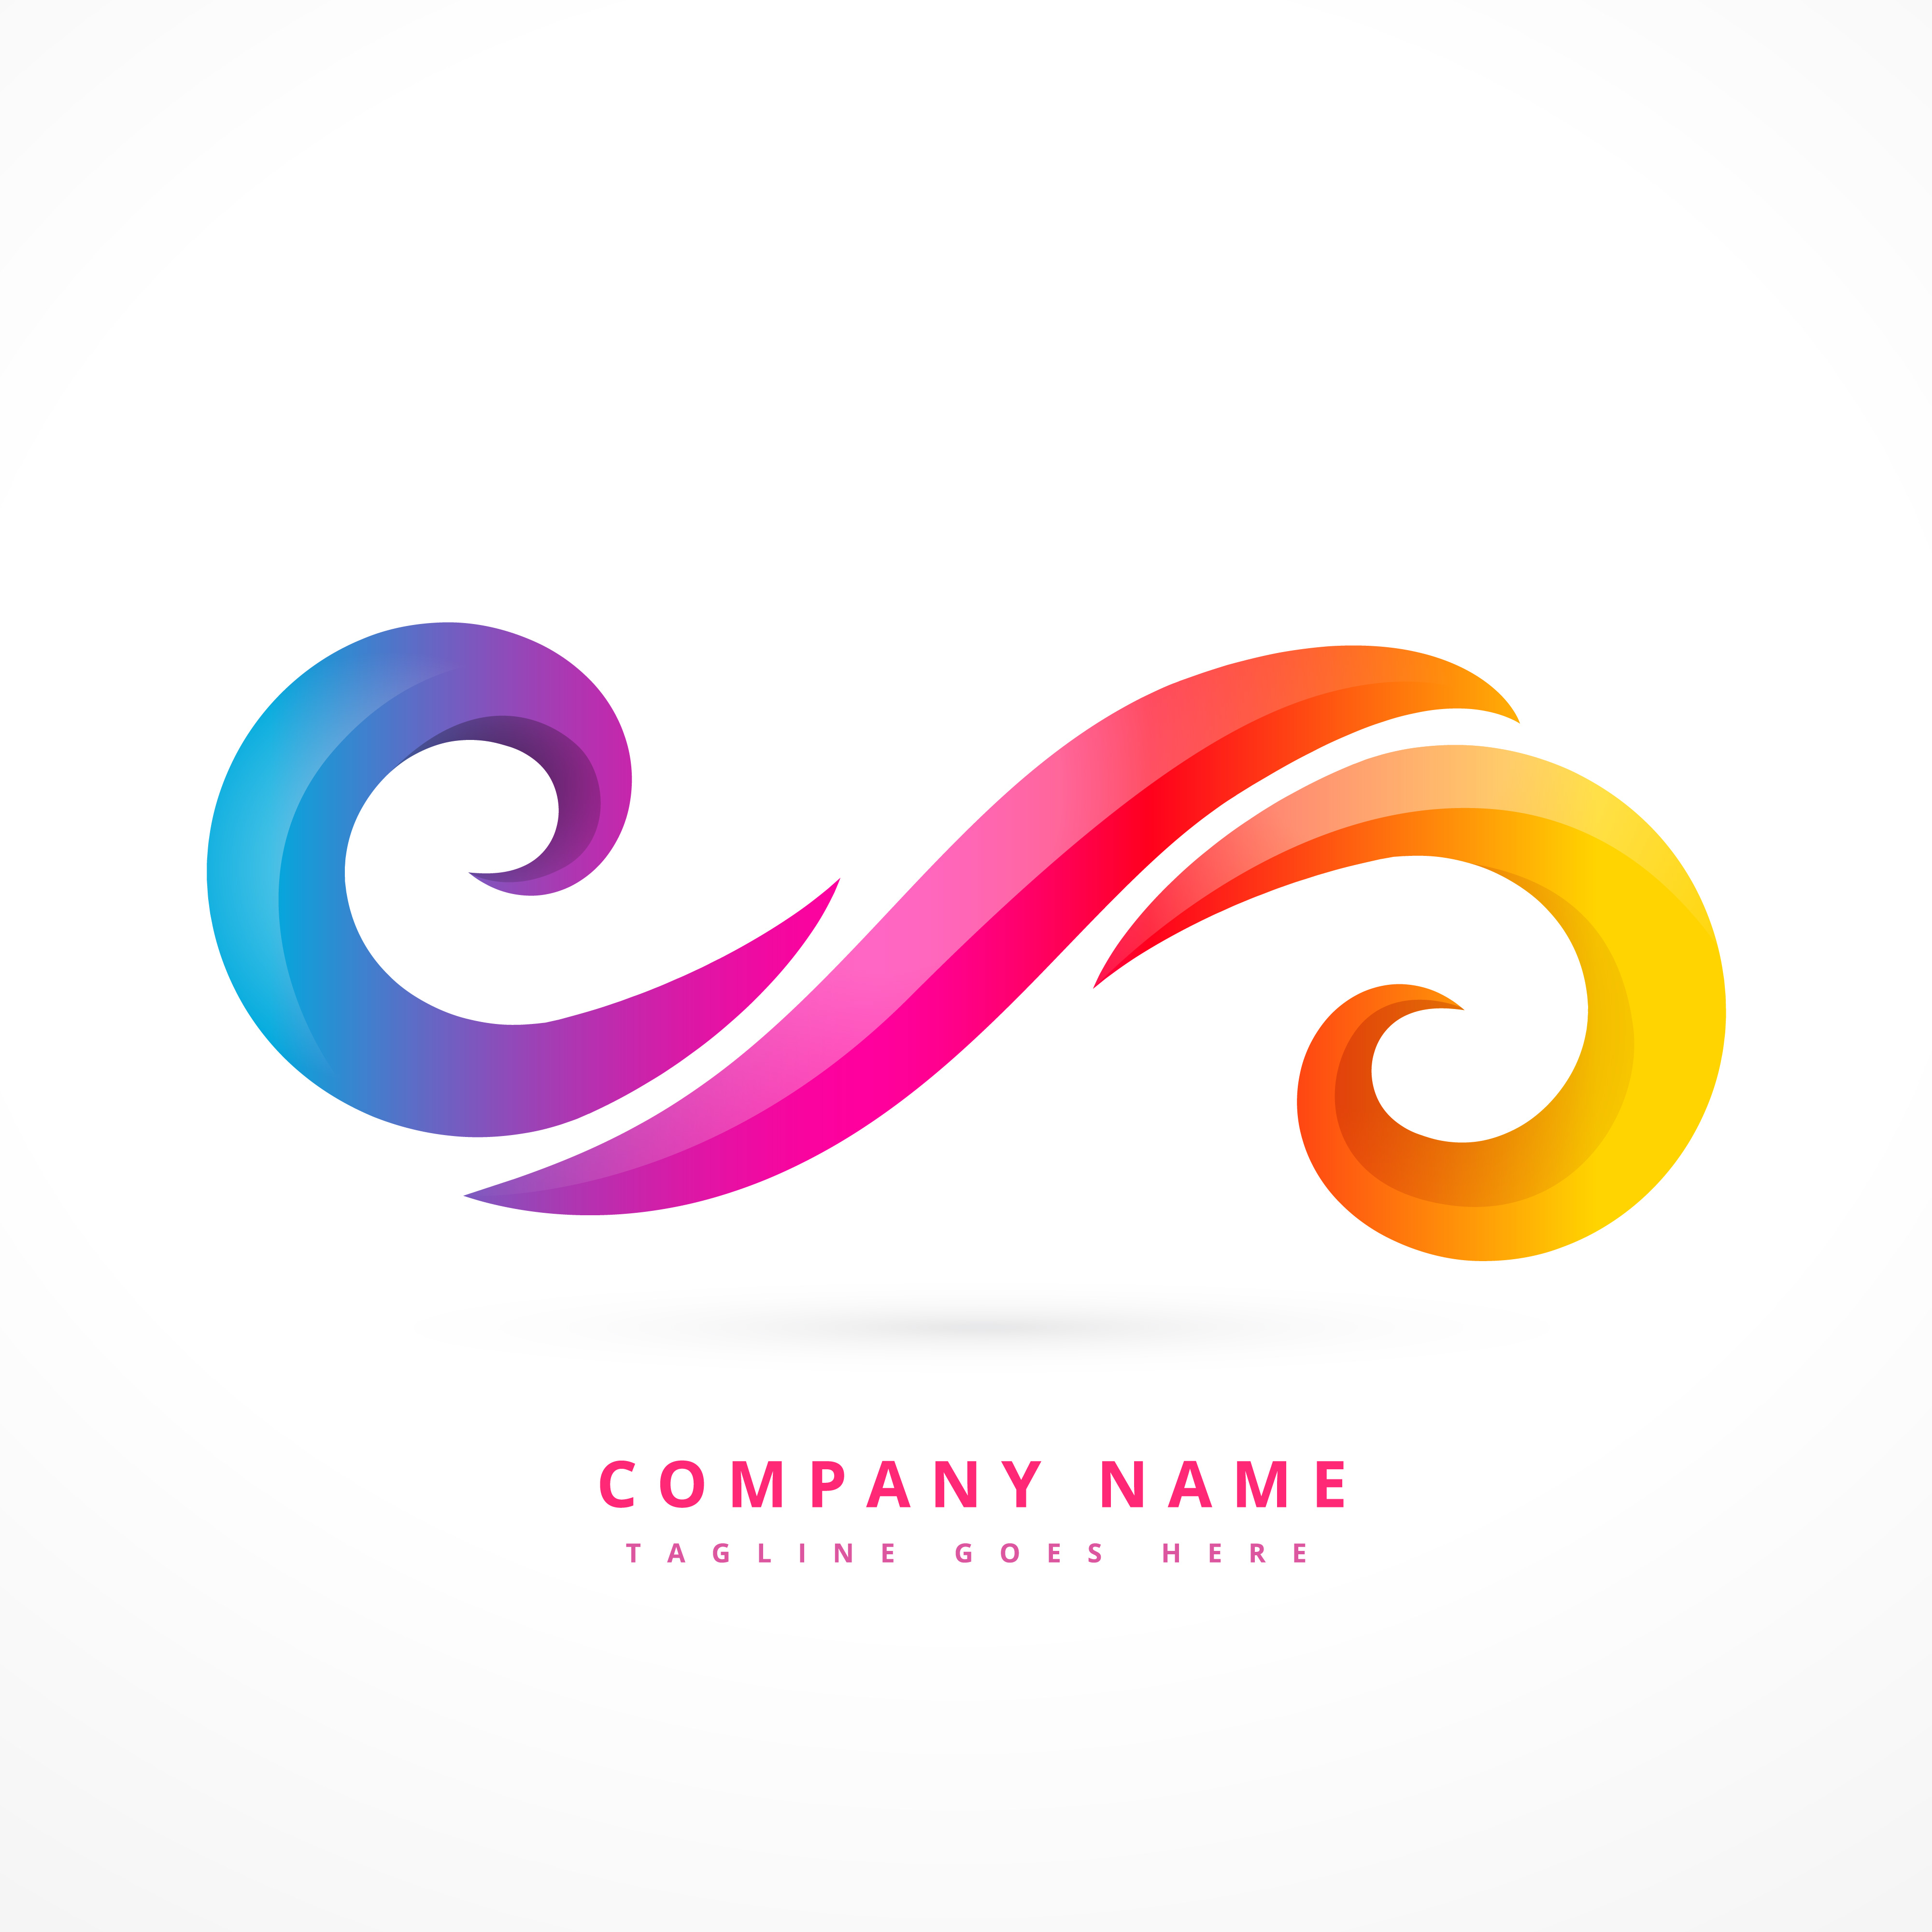 Logo Design Free Download Mac